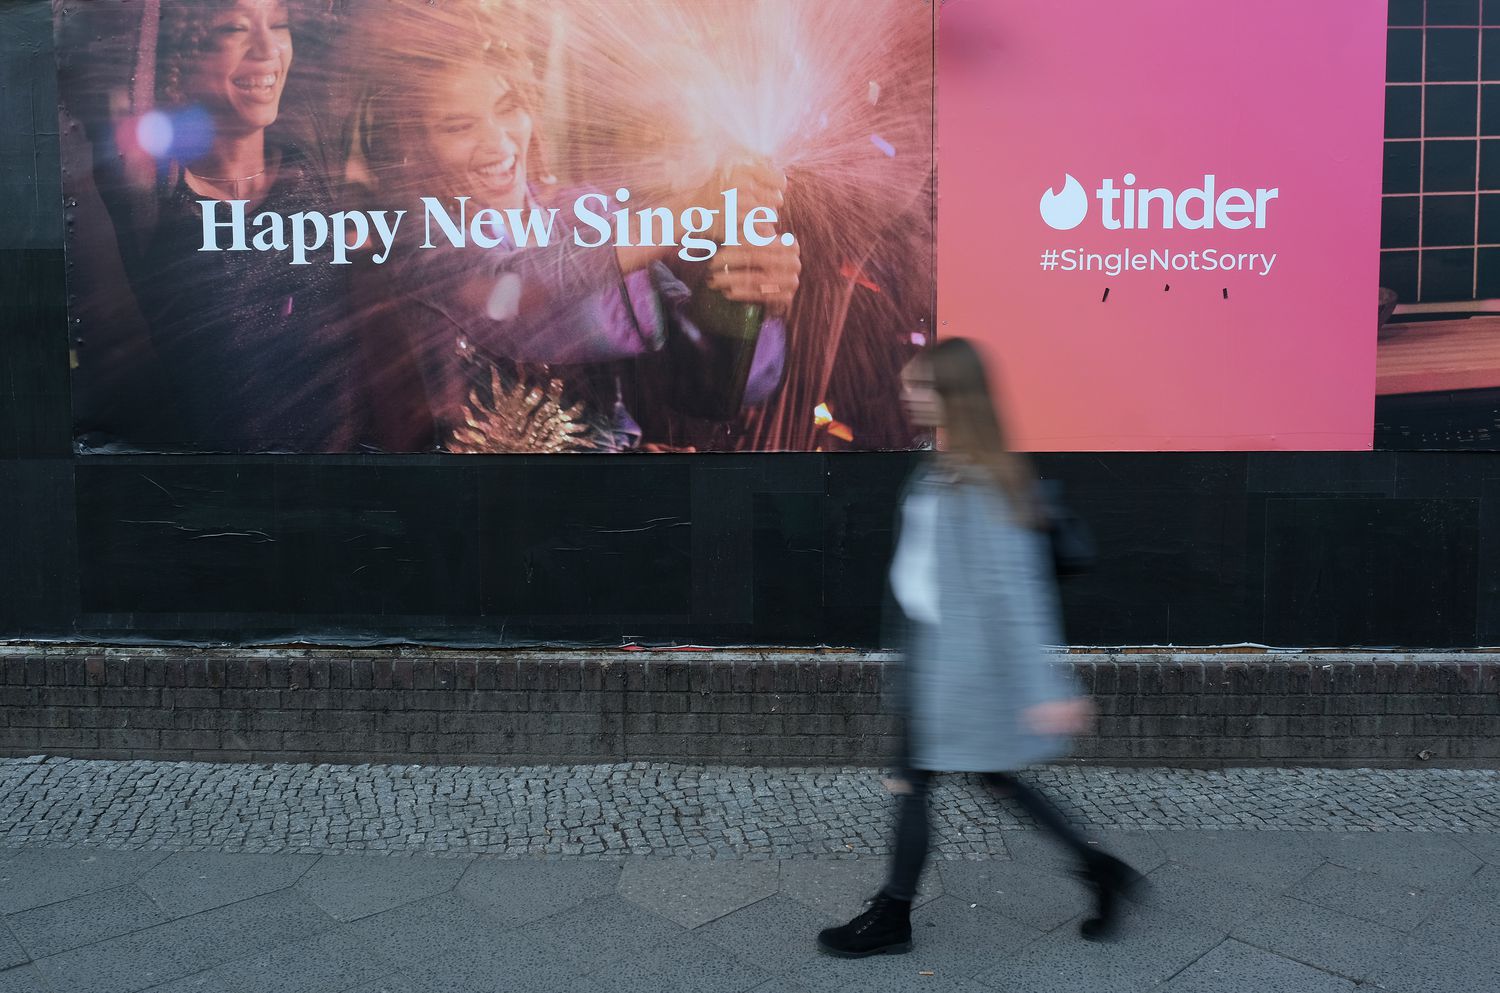 Une femme passe devant une annonce pour l'application de rencontres Tinder.